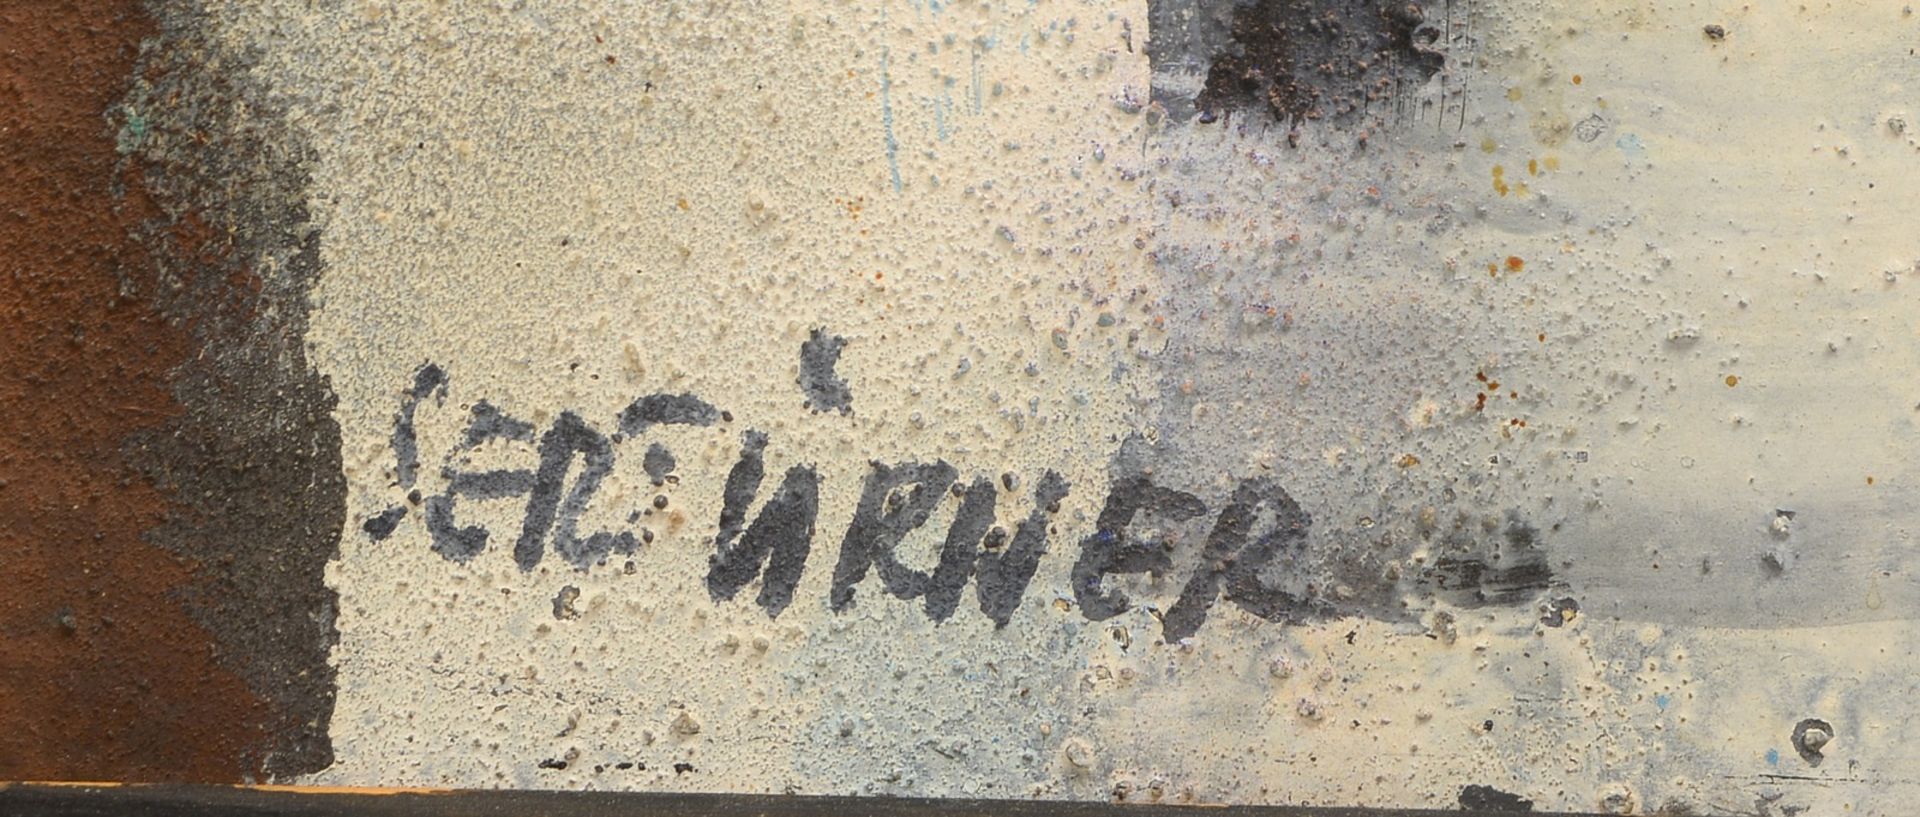 Sertürner, Wernhera, 'Quadratur' - OT, Öl/Hf, sign.; Rahmenmaße 65 x 91 cm - Bild 2 aus 2